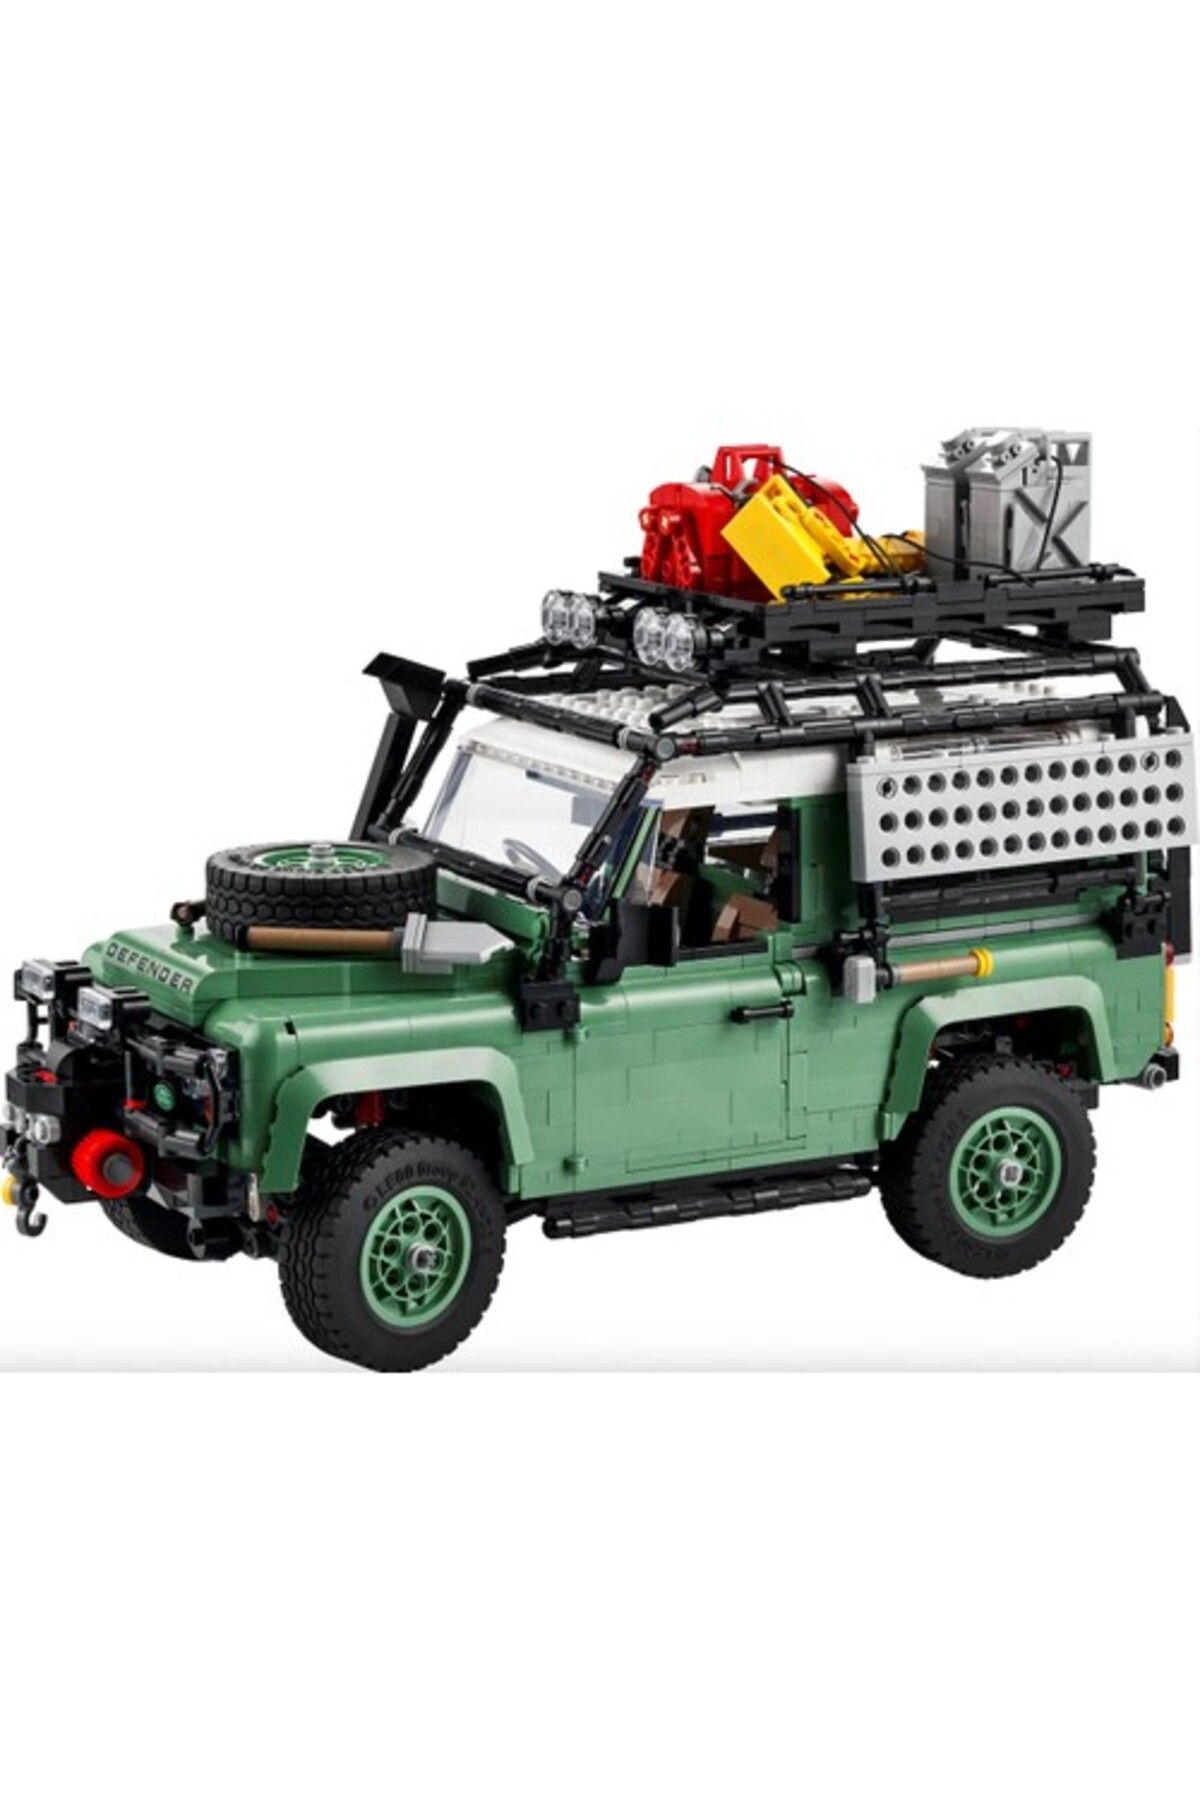 LEGO لگو آیکون های 10317 لندرور کلاسیک دیفندر 90 (2336 قطعه)